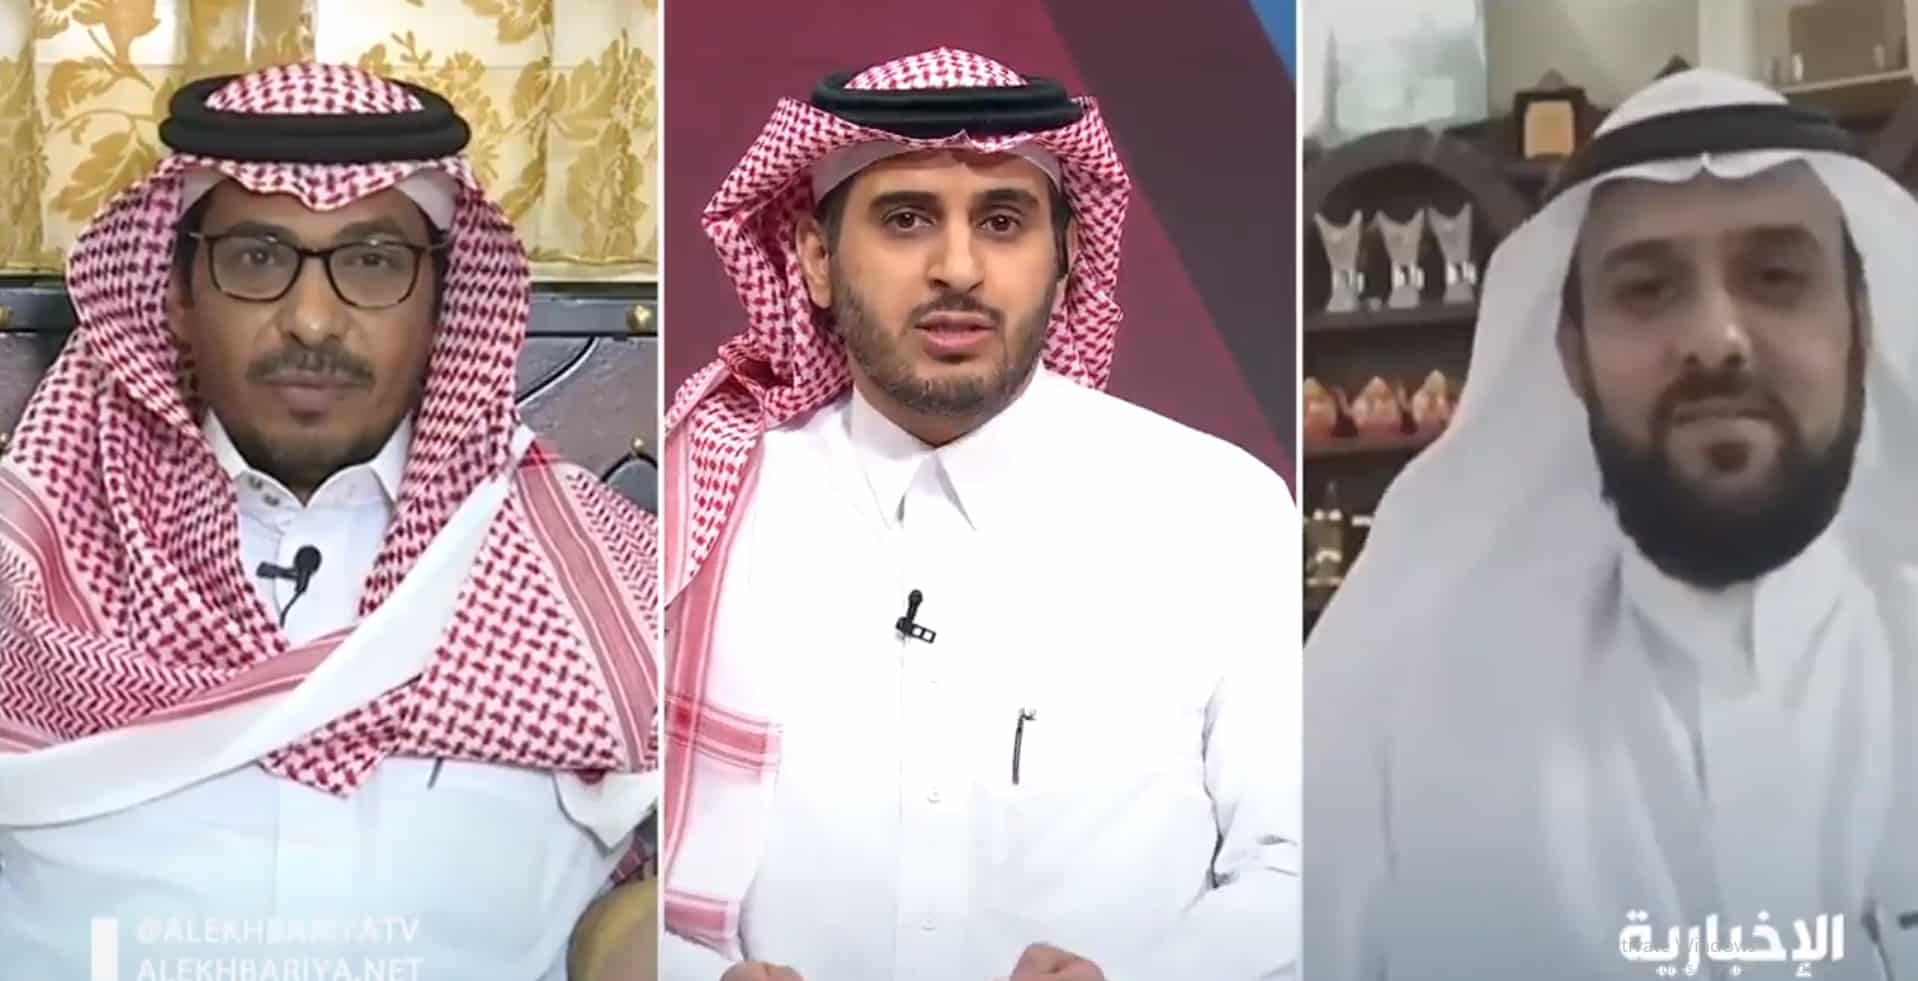 محمد العنزي يتنازل عن ديون وصلت إلى مليون ريال: اسأل الله القبول